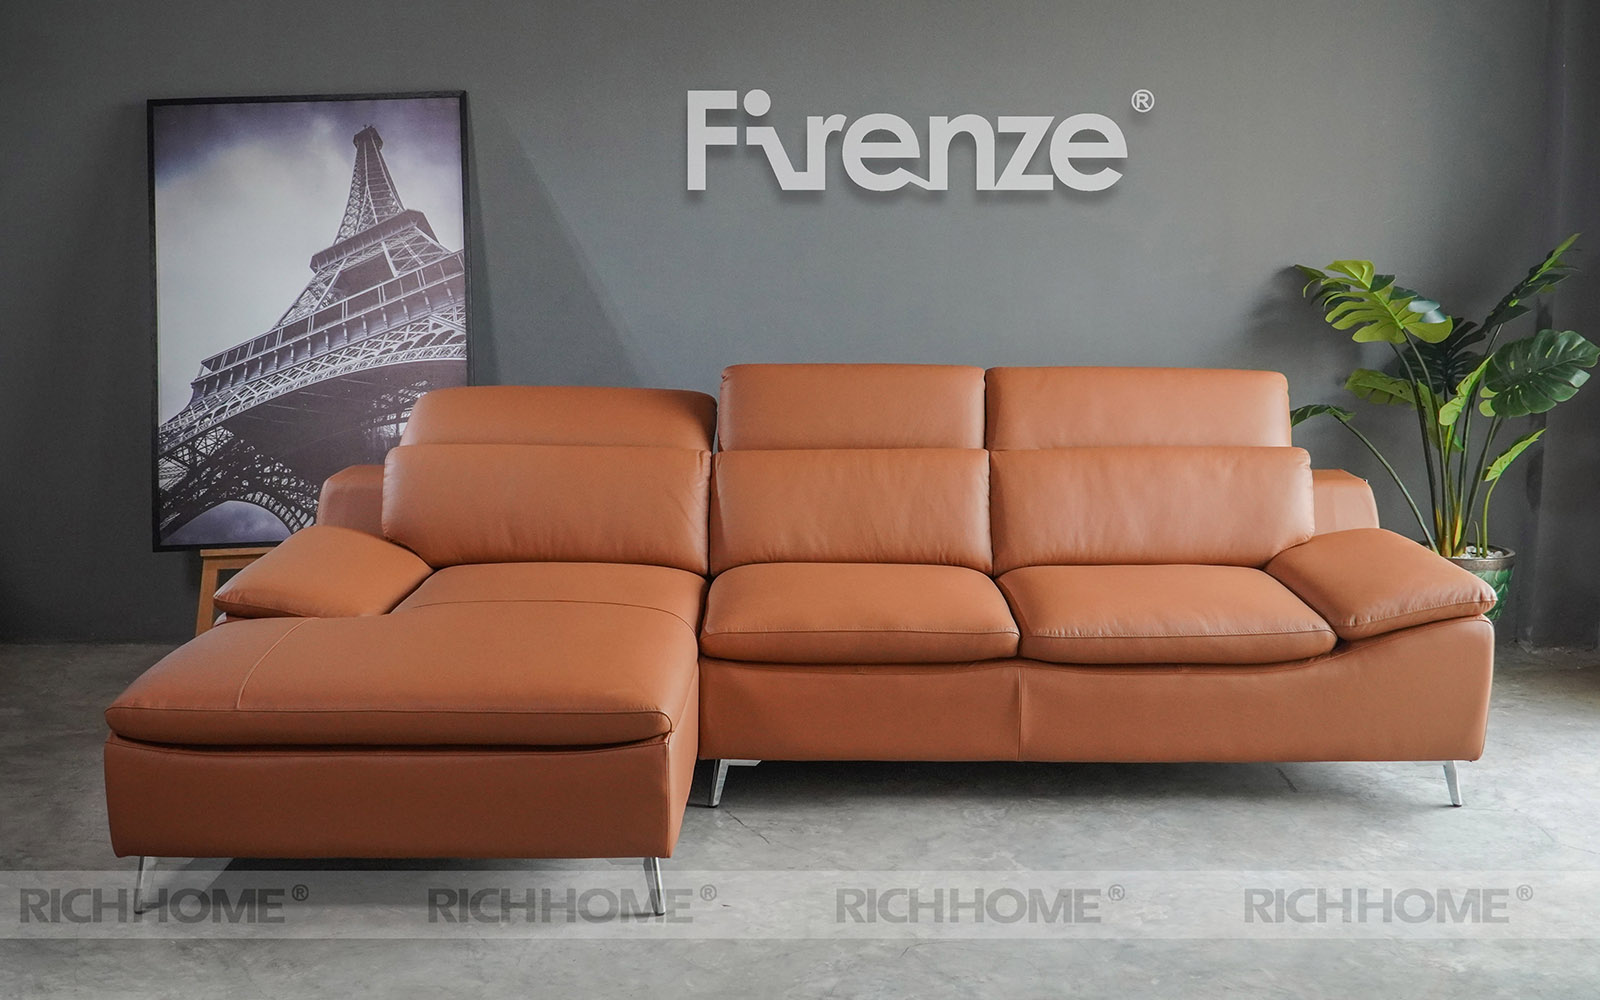 Tại sao hầu hết các mẫu sofa tiếp khách văn phòng đều được thiết kế đơn giản? - Ảnh 4